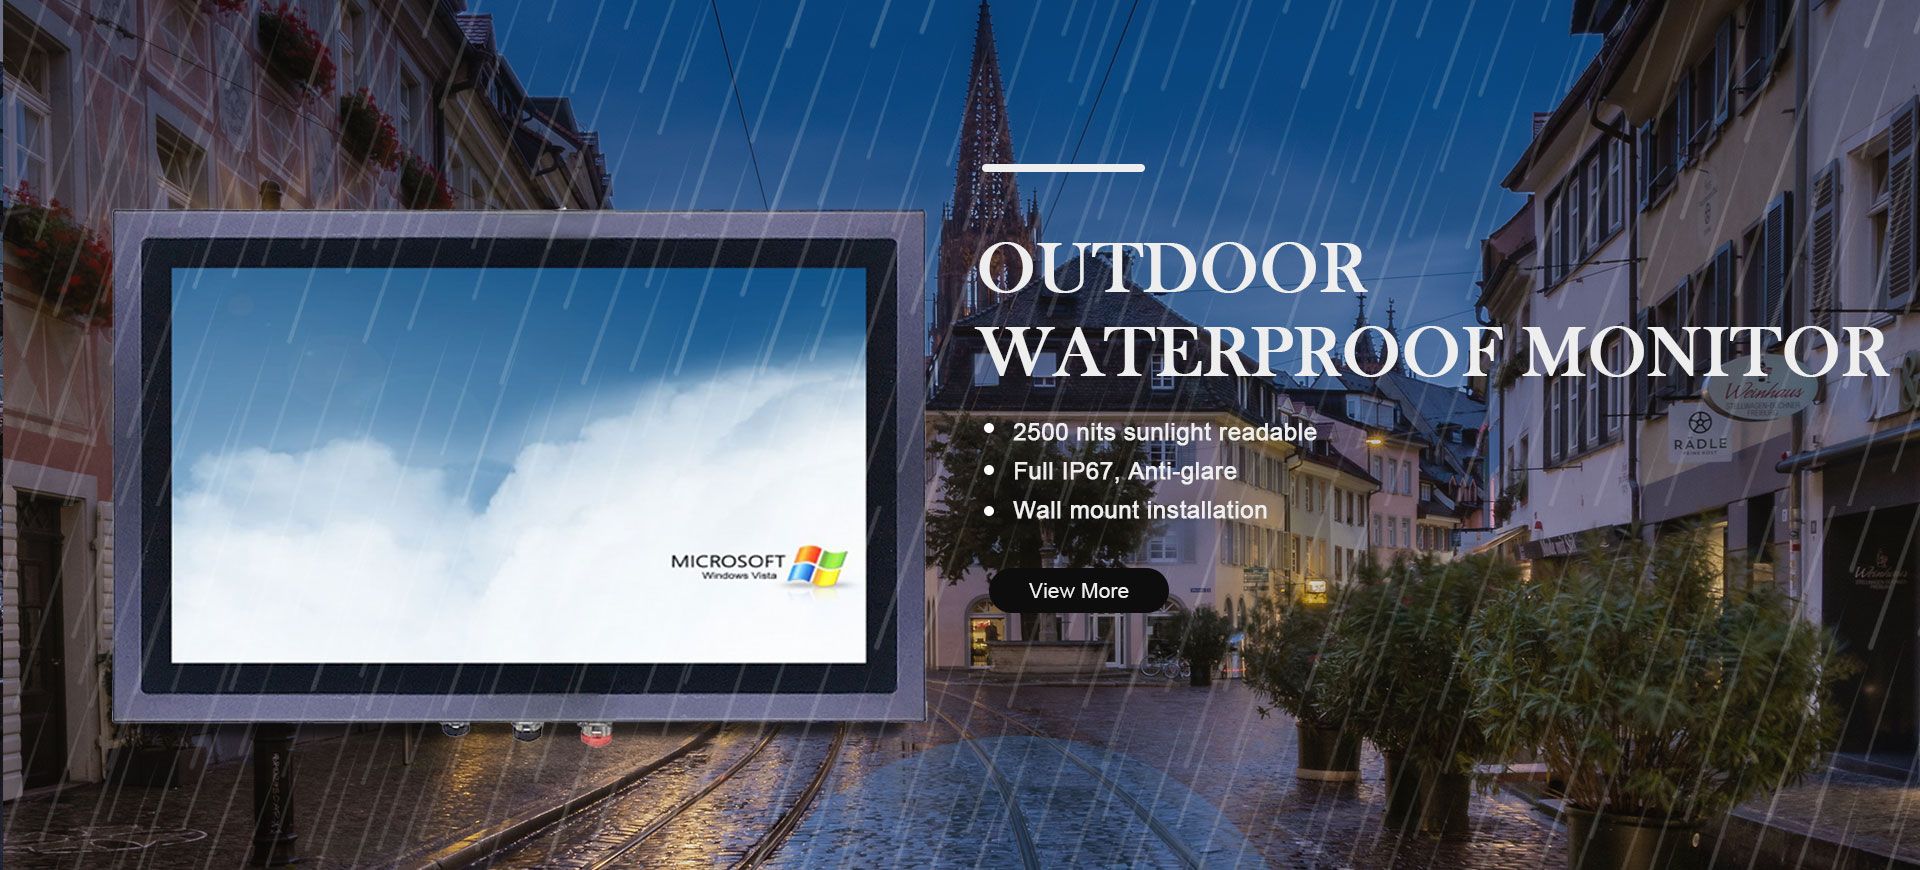 Outdoor Waterproof Monitor